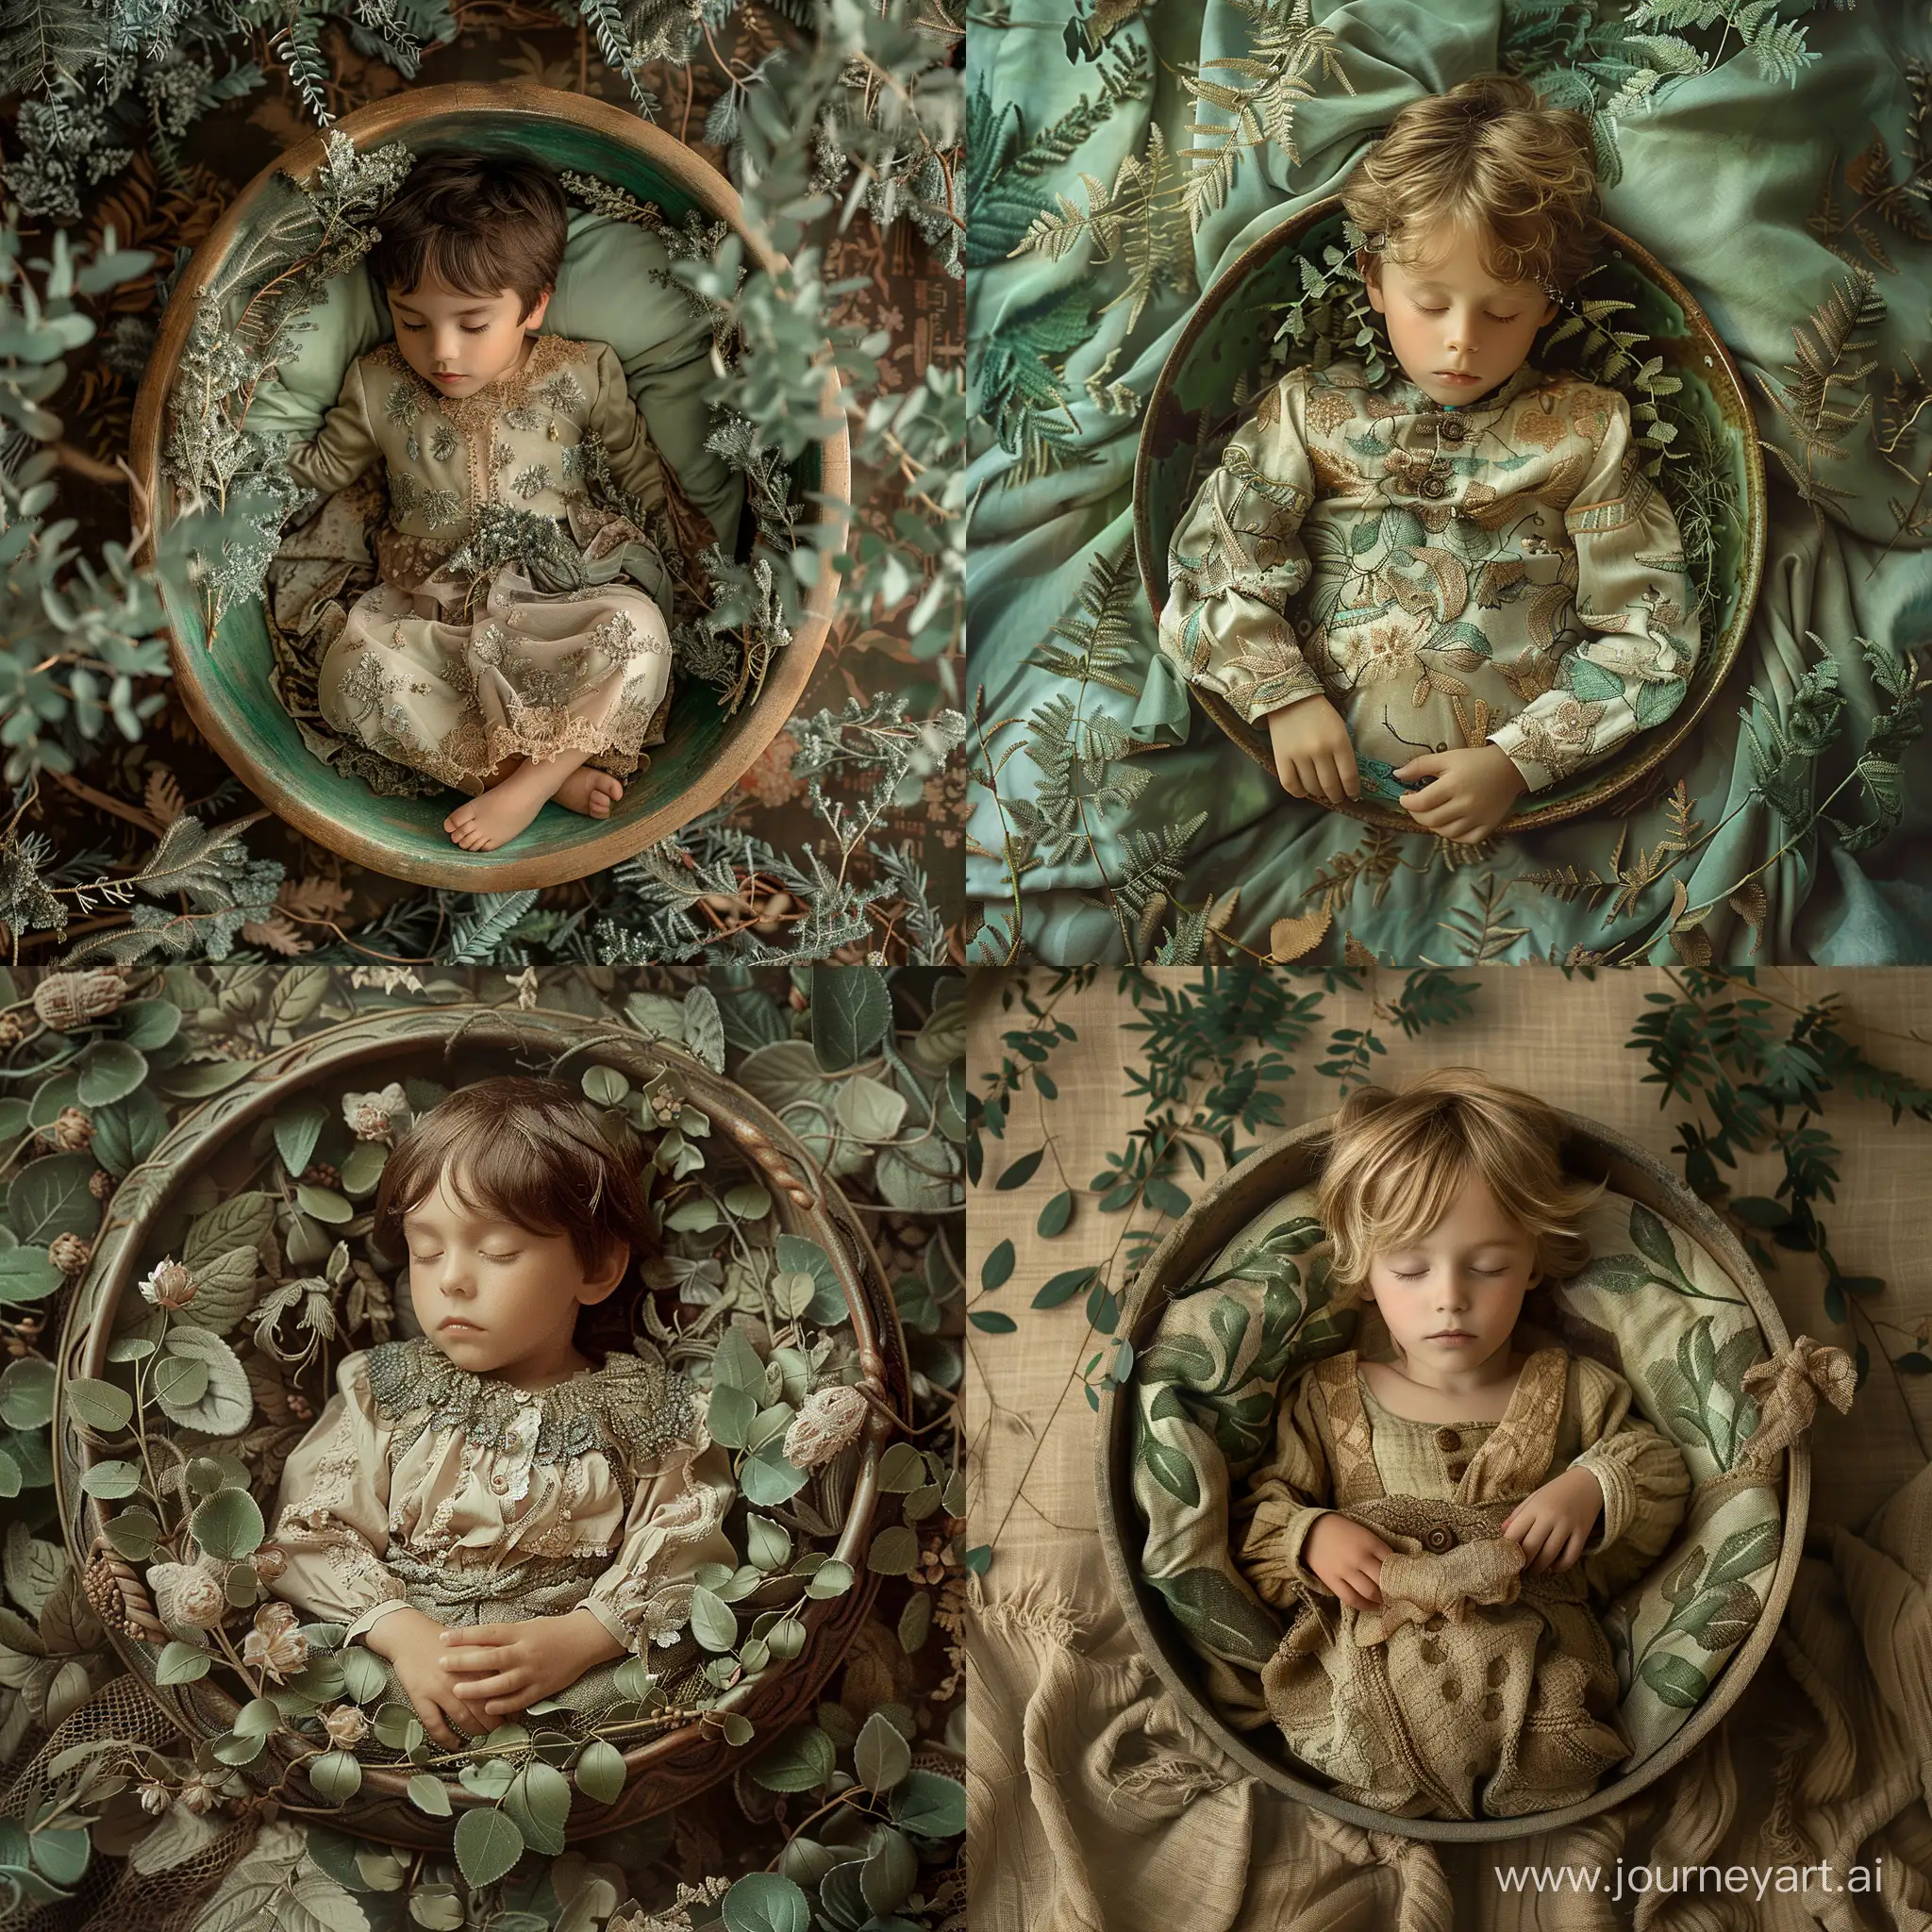 
маленький мальчик спит в миске, в стиле деревенских текстур, очень детализированная листва, светло-изумрудный и светло-коричневый цвета, детализированные костюмы, отмеченные наградами, все тело видно, вид сверху
